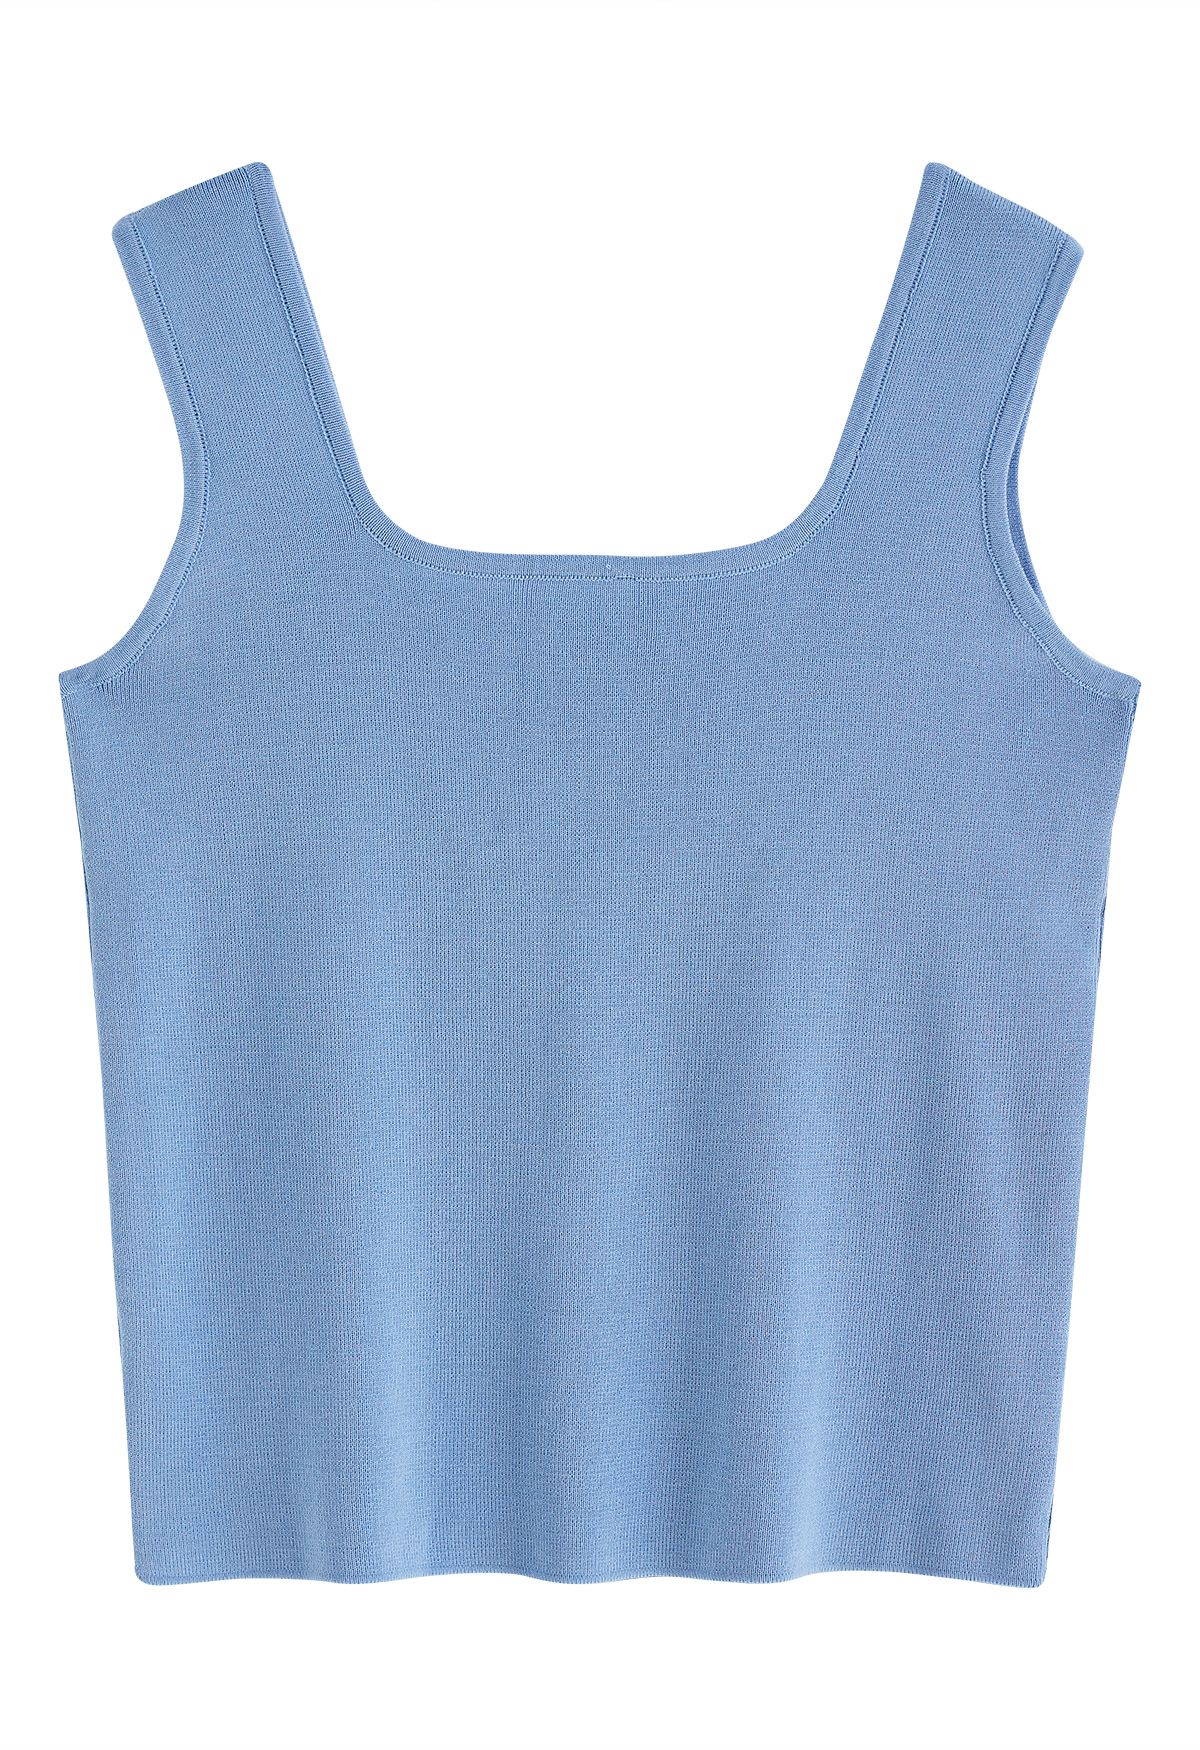 Camiseta sin mangas de punto con cuello cuadrado elegante en azul